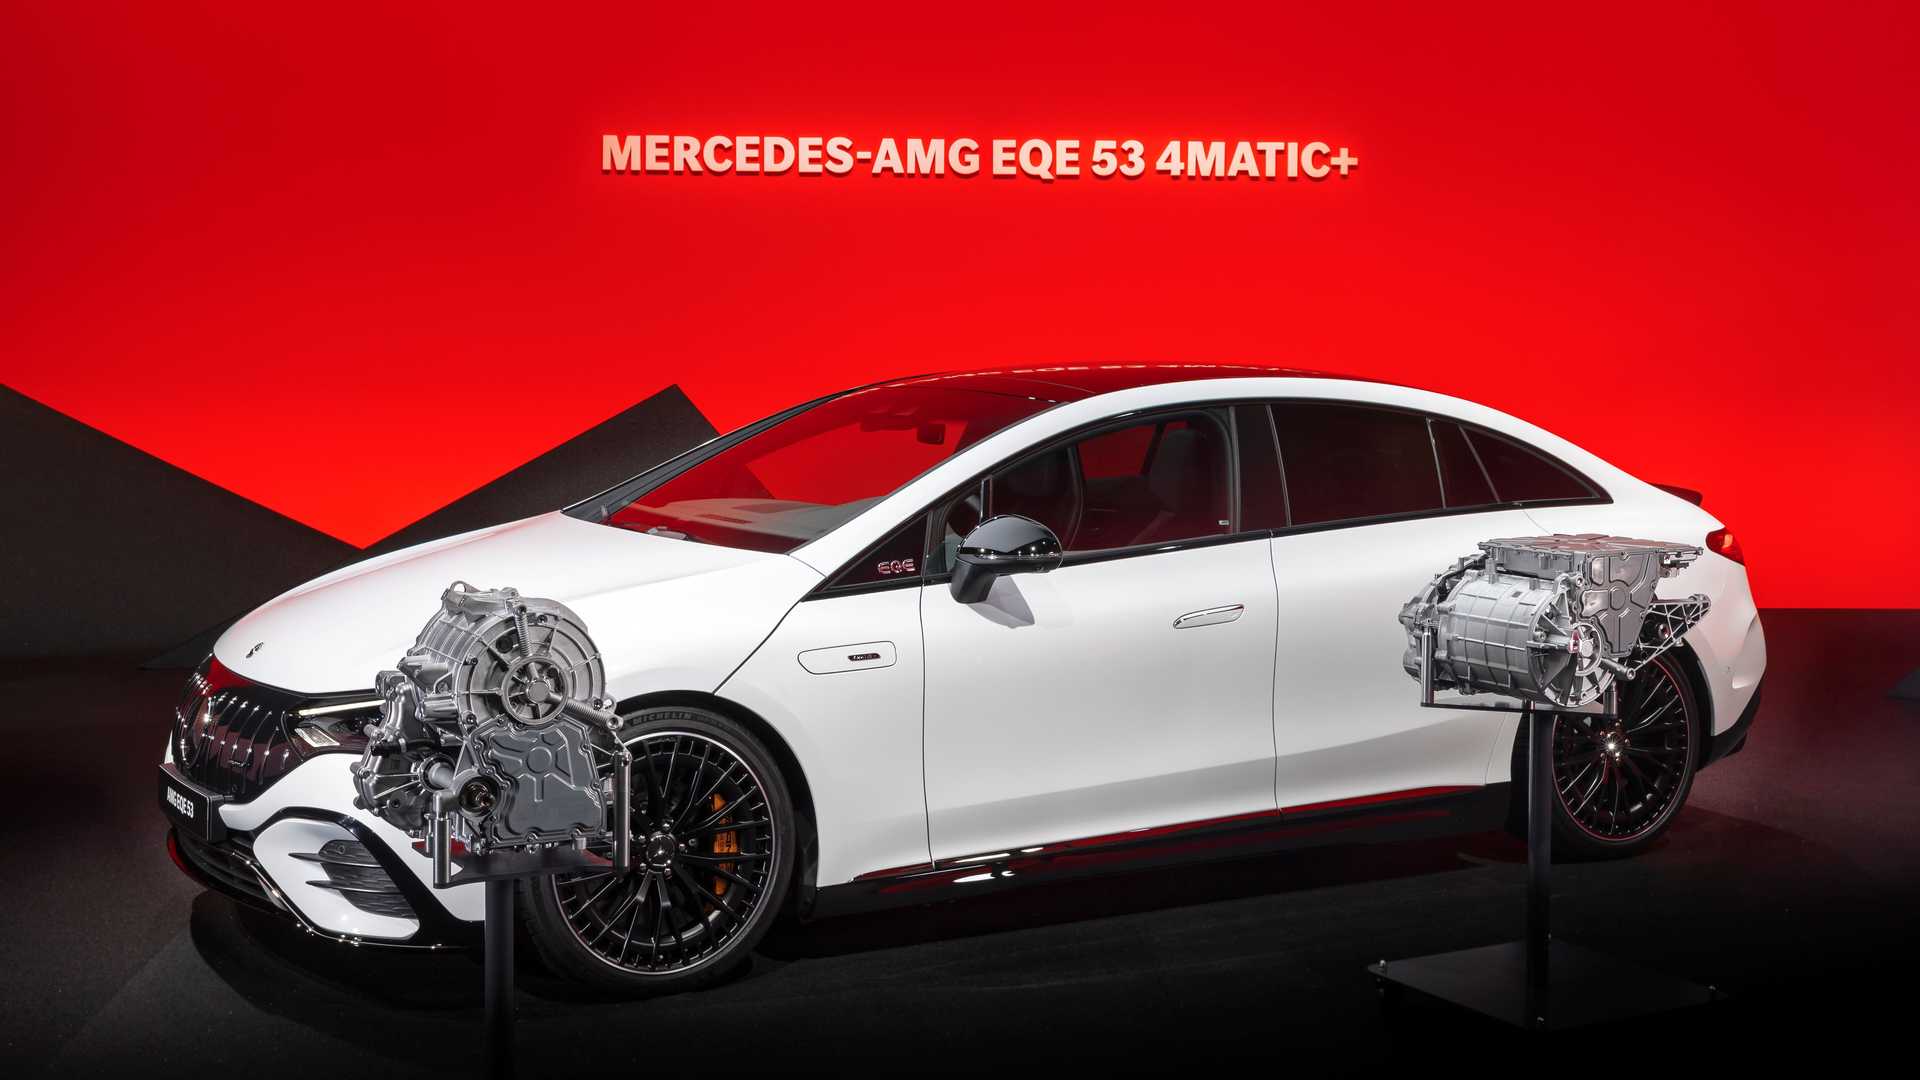 Mercedes-AMG EQE oficjalnie zaprezentowany - trzy odmiany mocy